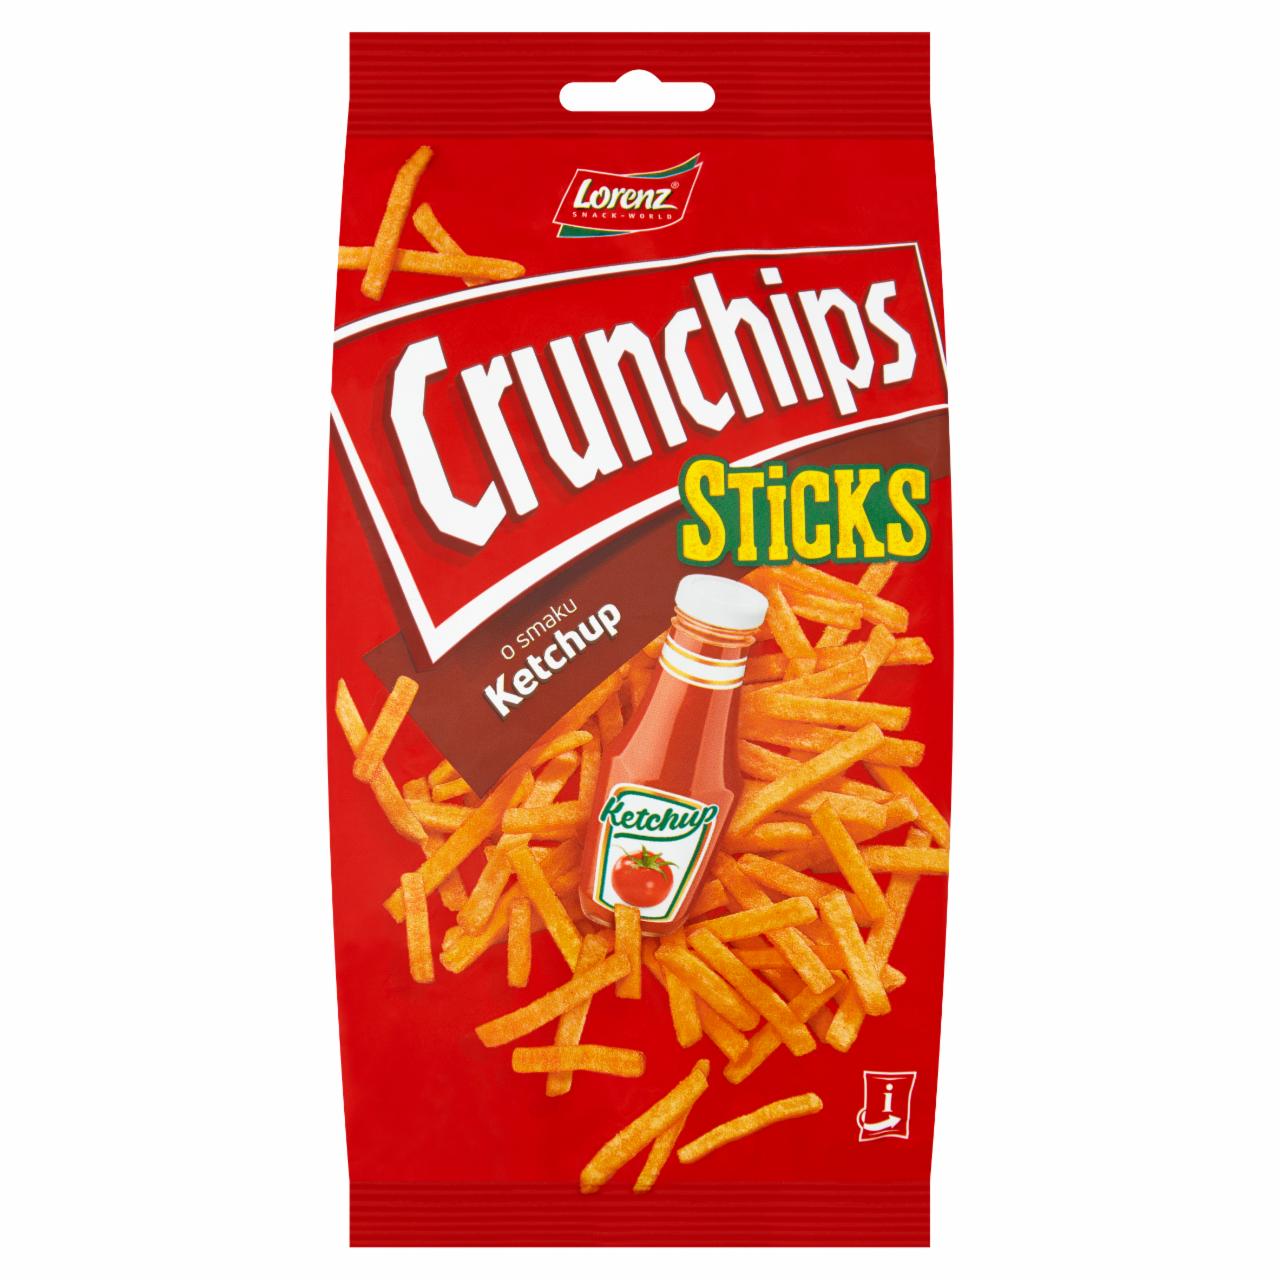 Zdjęcia - Crunchips Sticks Chipsy ziemniaczane o smaku ketchup 70 g